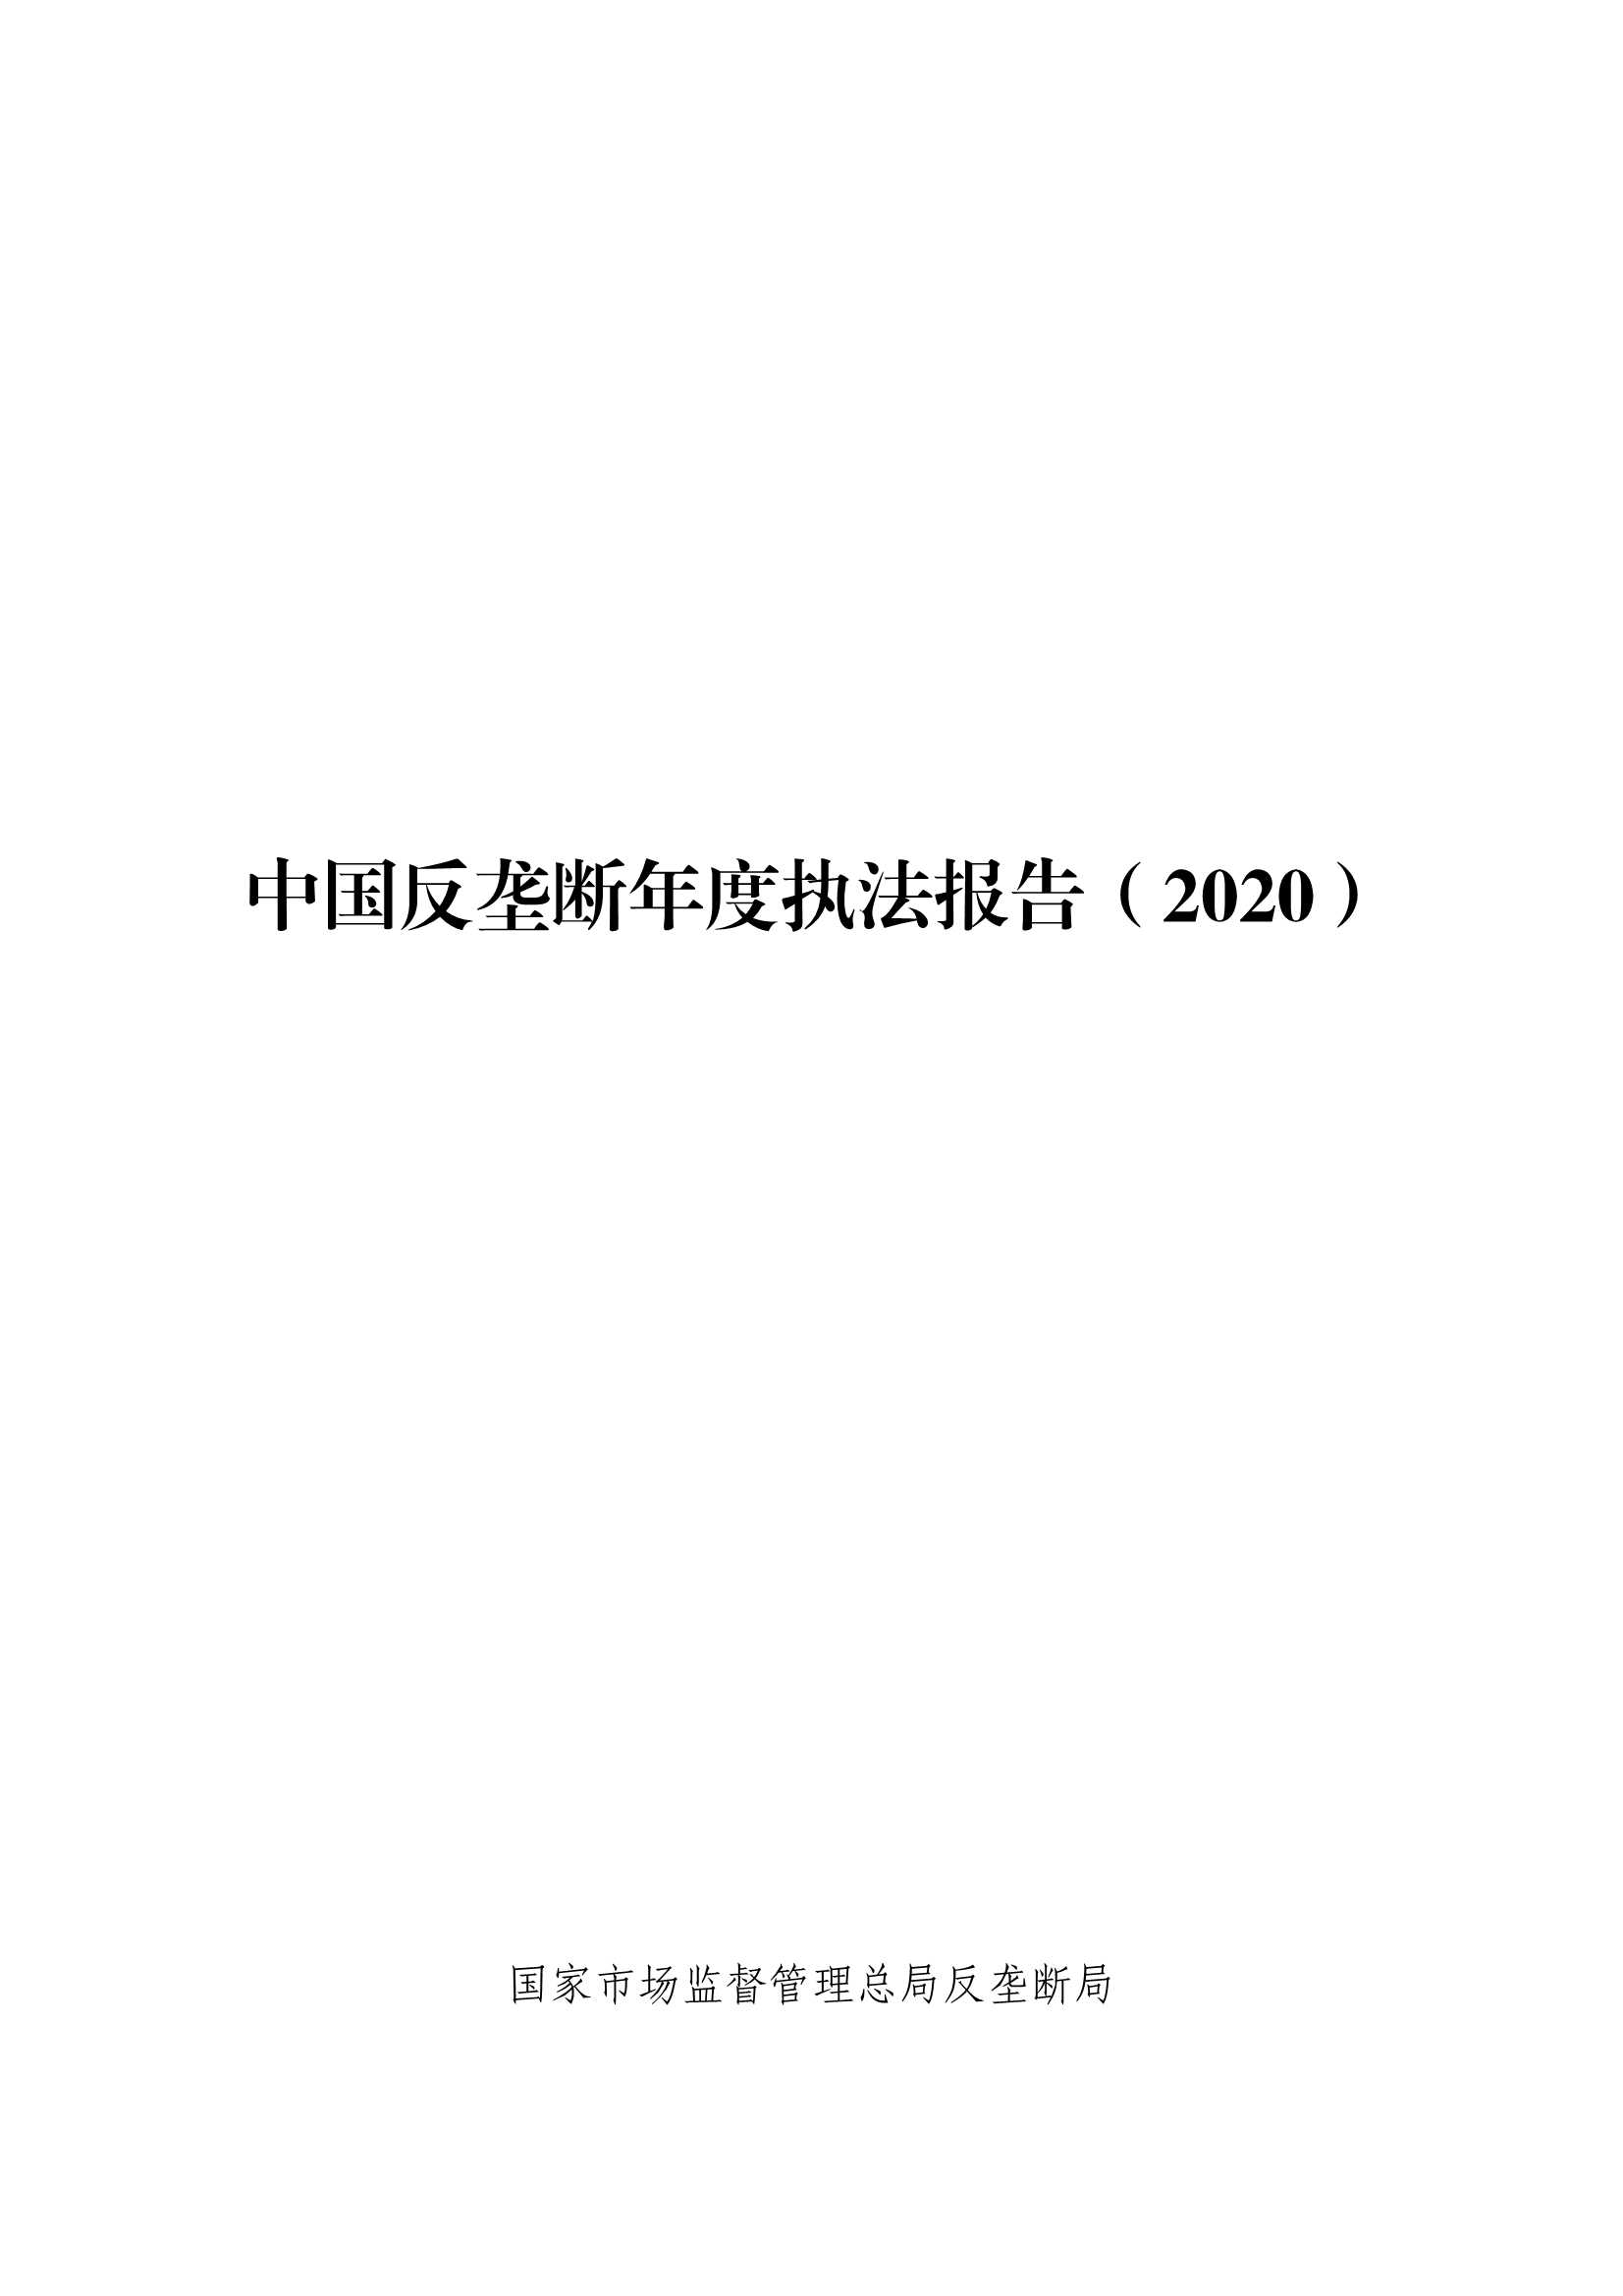 中国反垄断执法年度报告（2020）-2021.09-267页